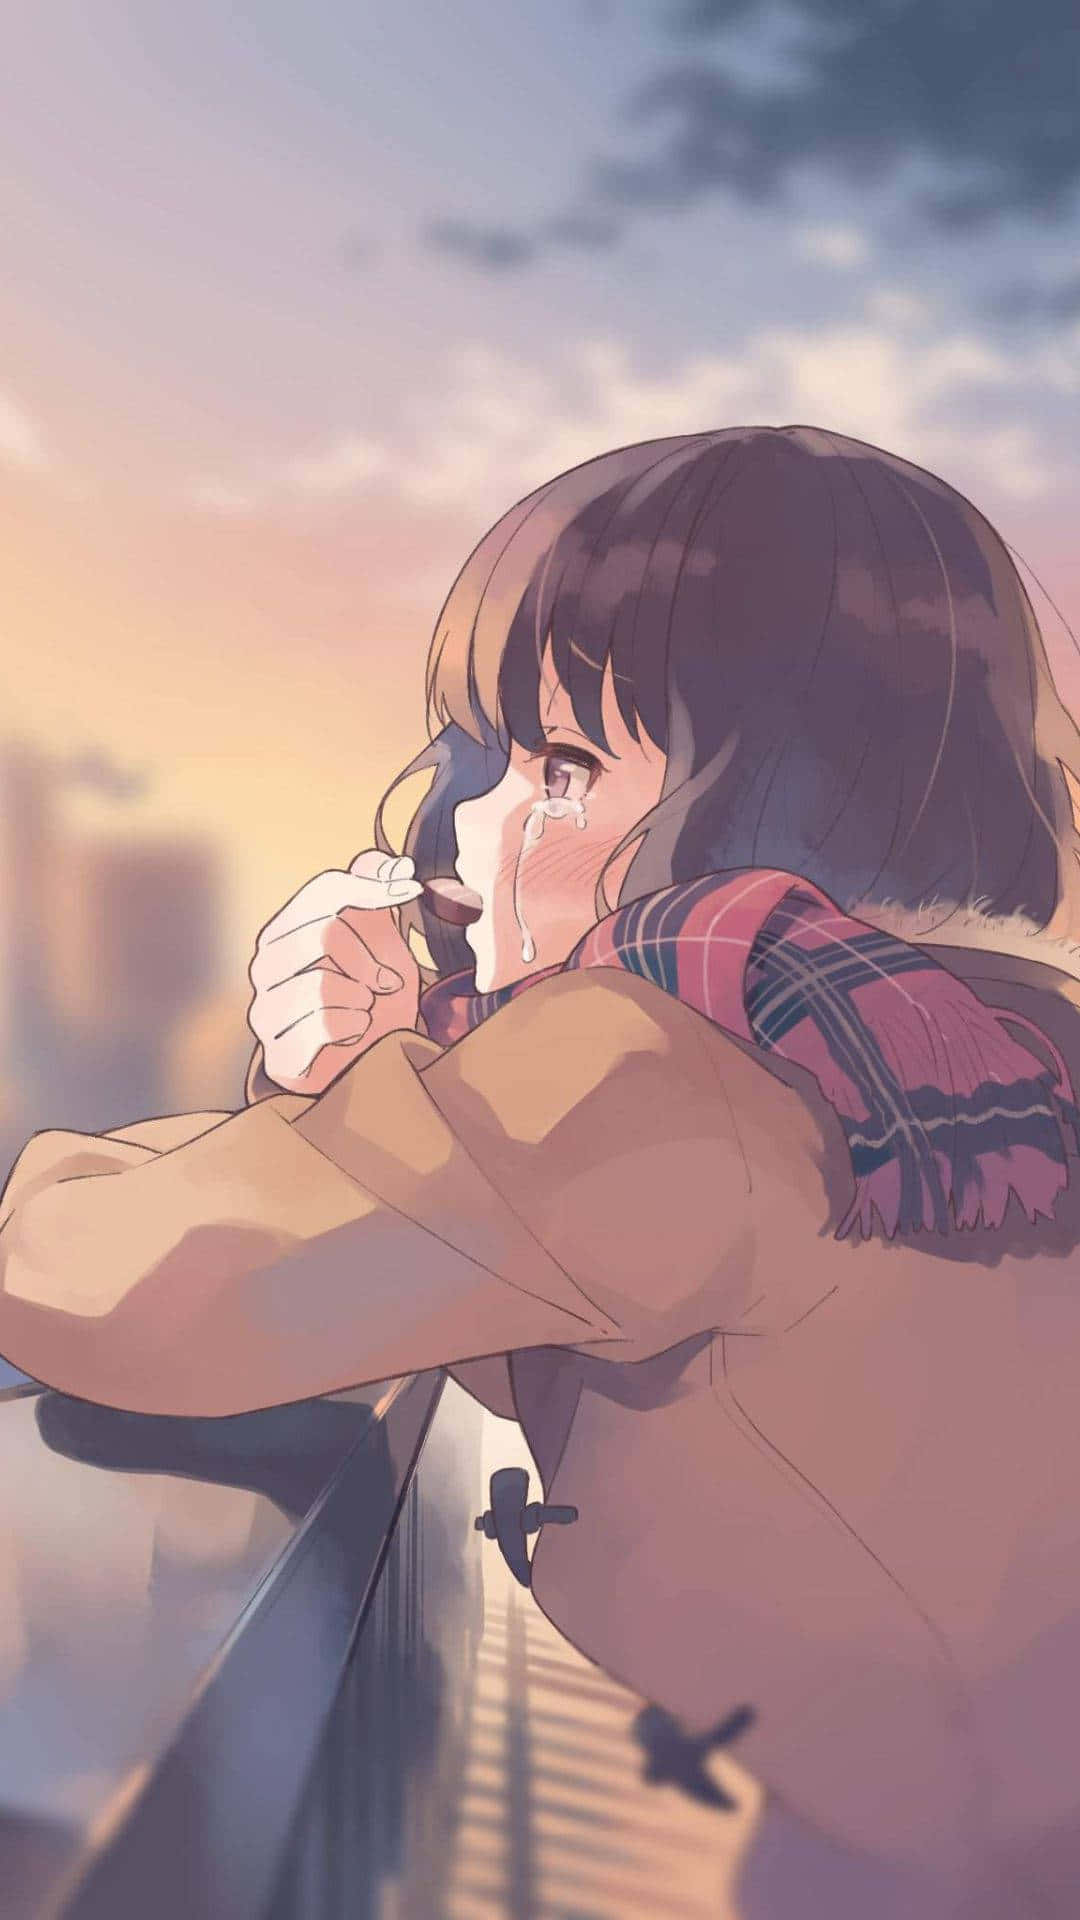 Skildringav Hjärtskärande Sorg I Ett Anime-ögonblick. Wallpaper